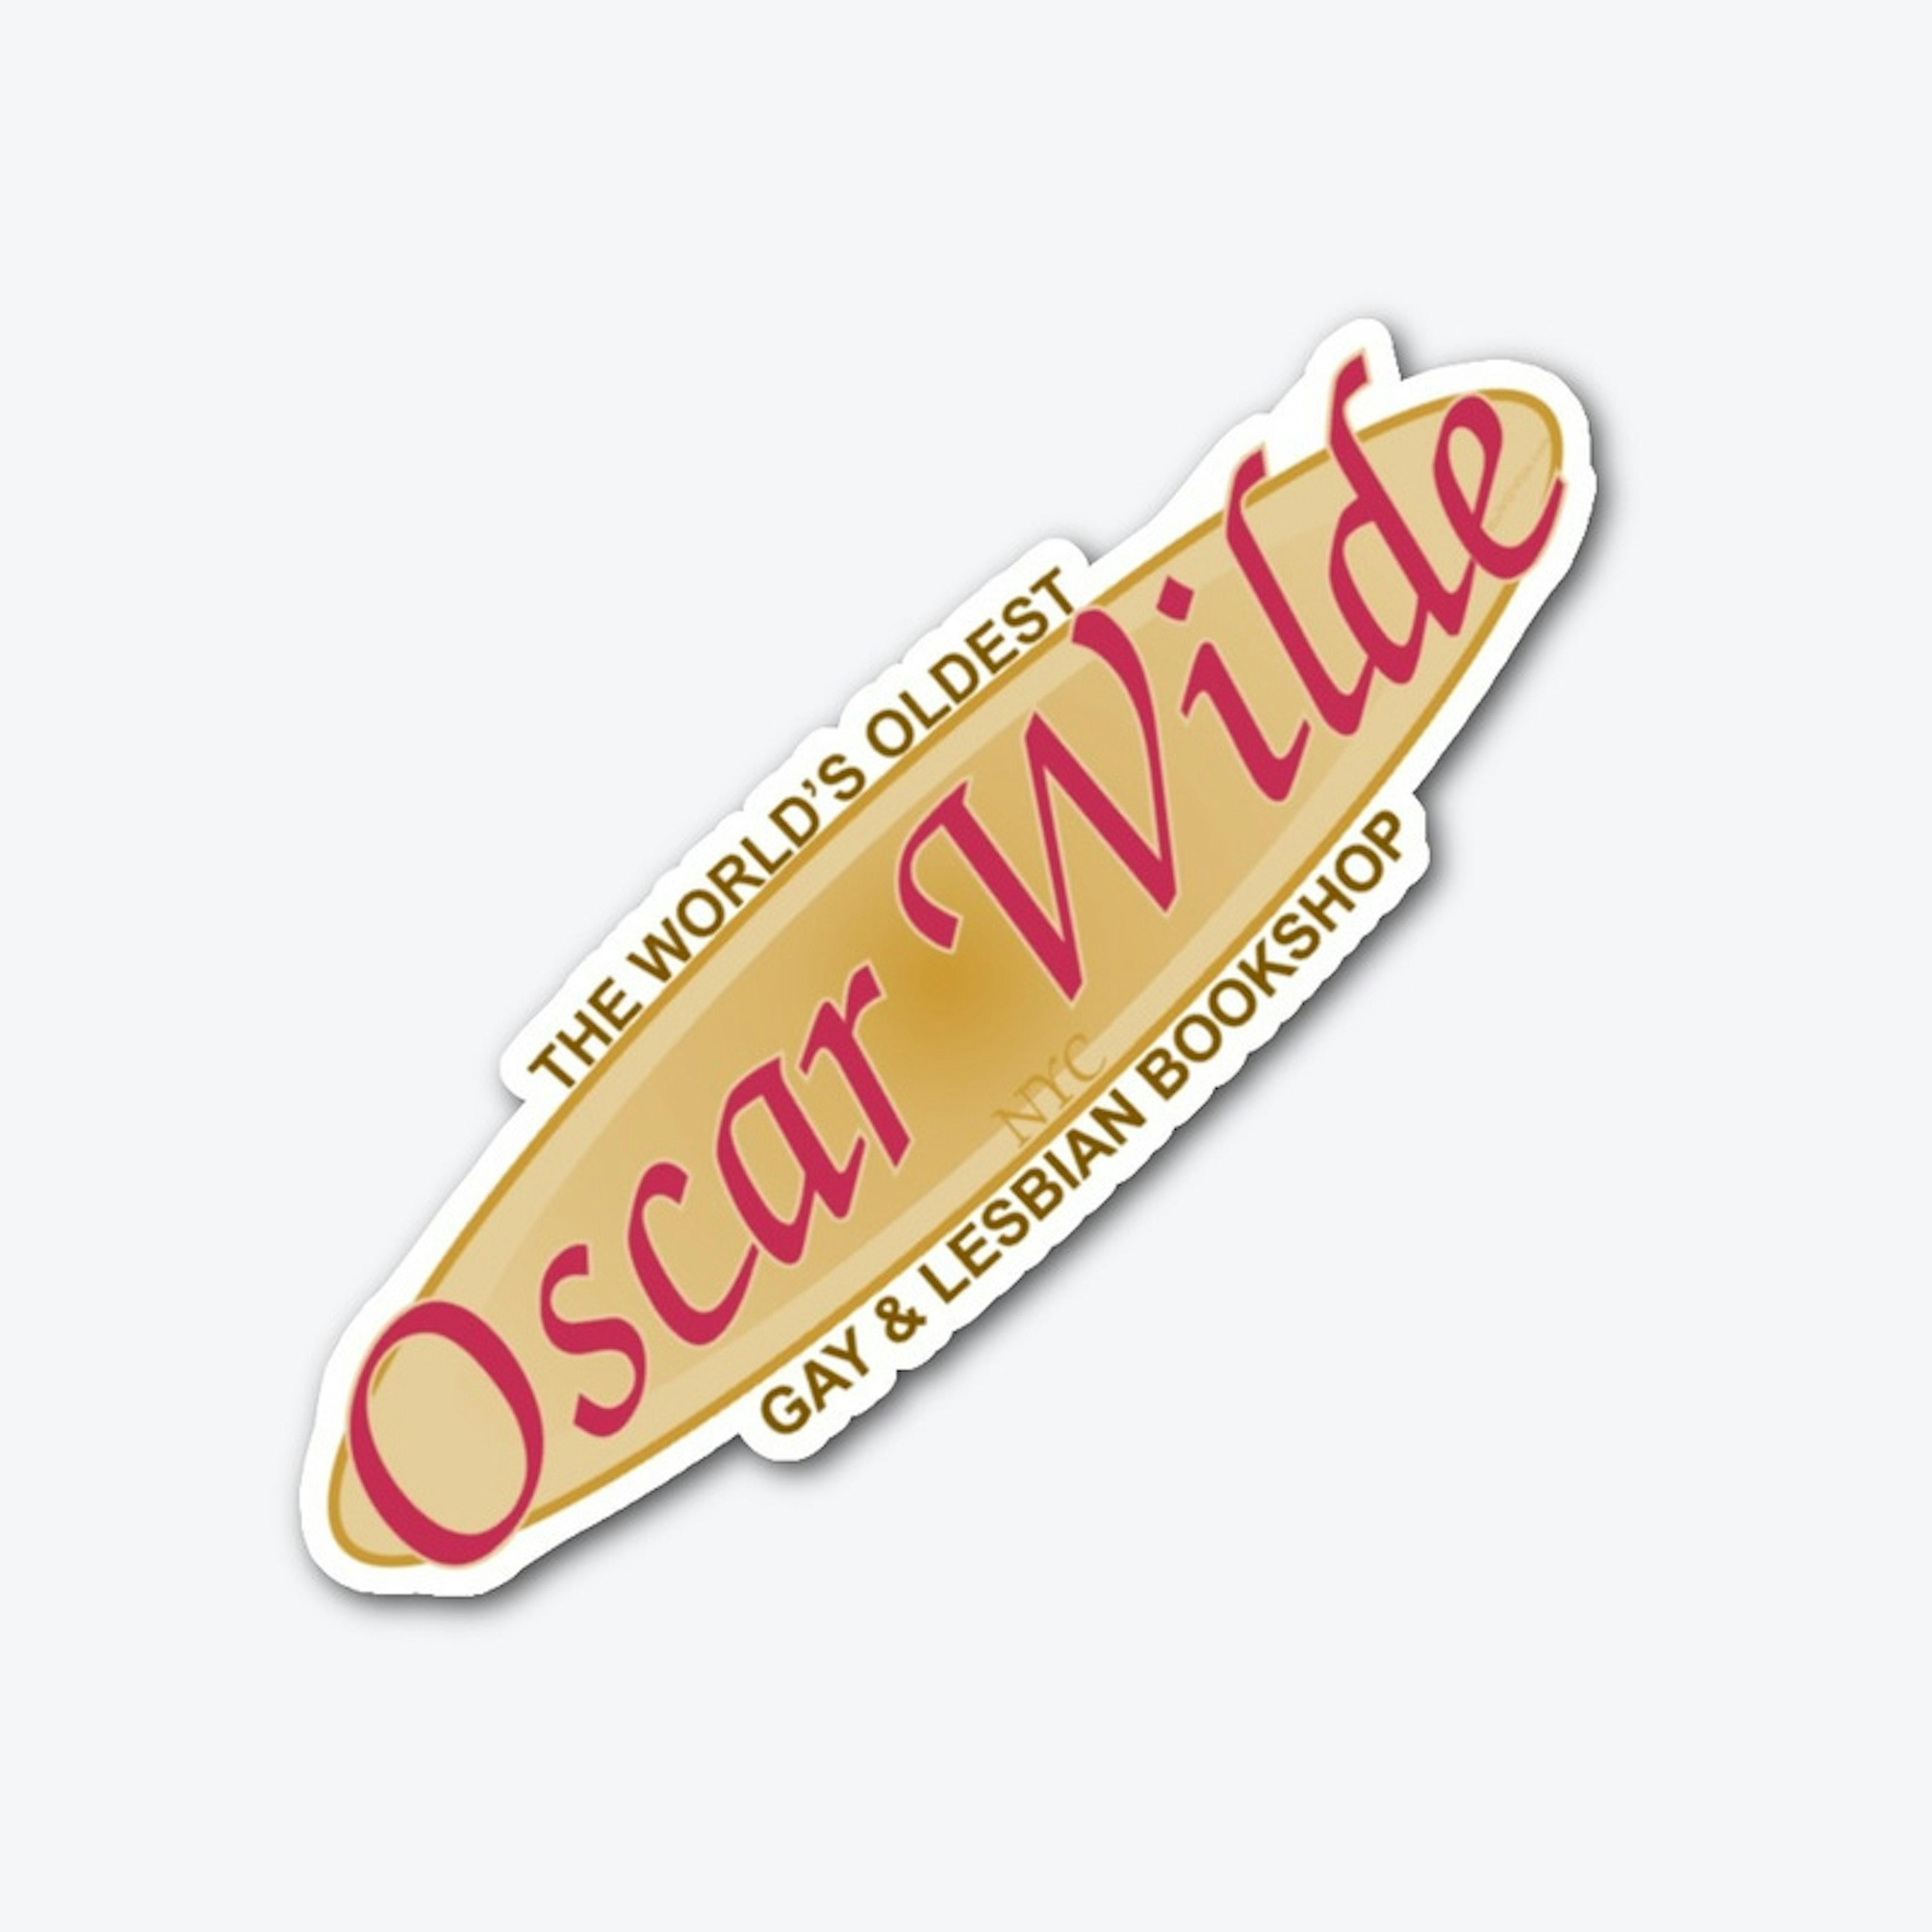 OscarWildeBookshop